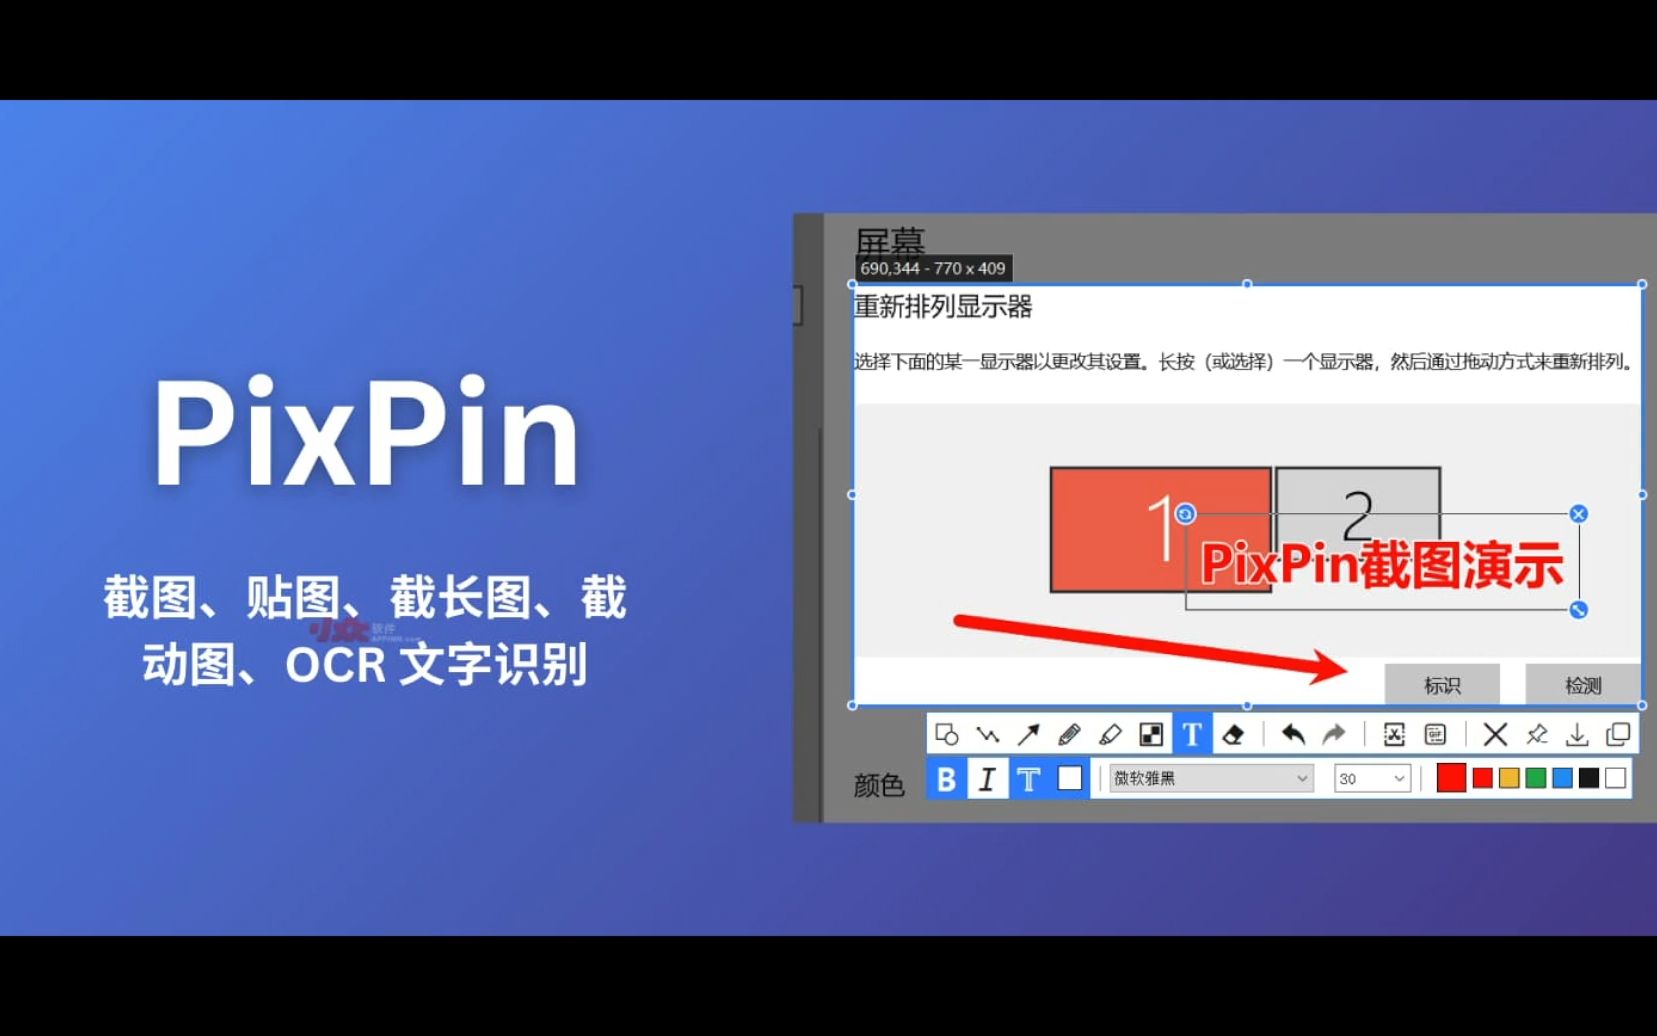 PixPin：新的截图、贴图、截长图、截动图、OCR 文字识别工具